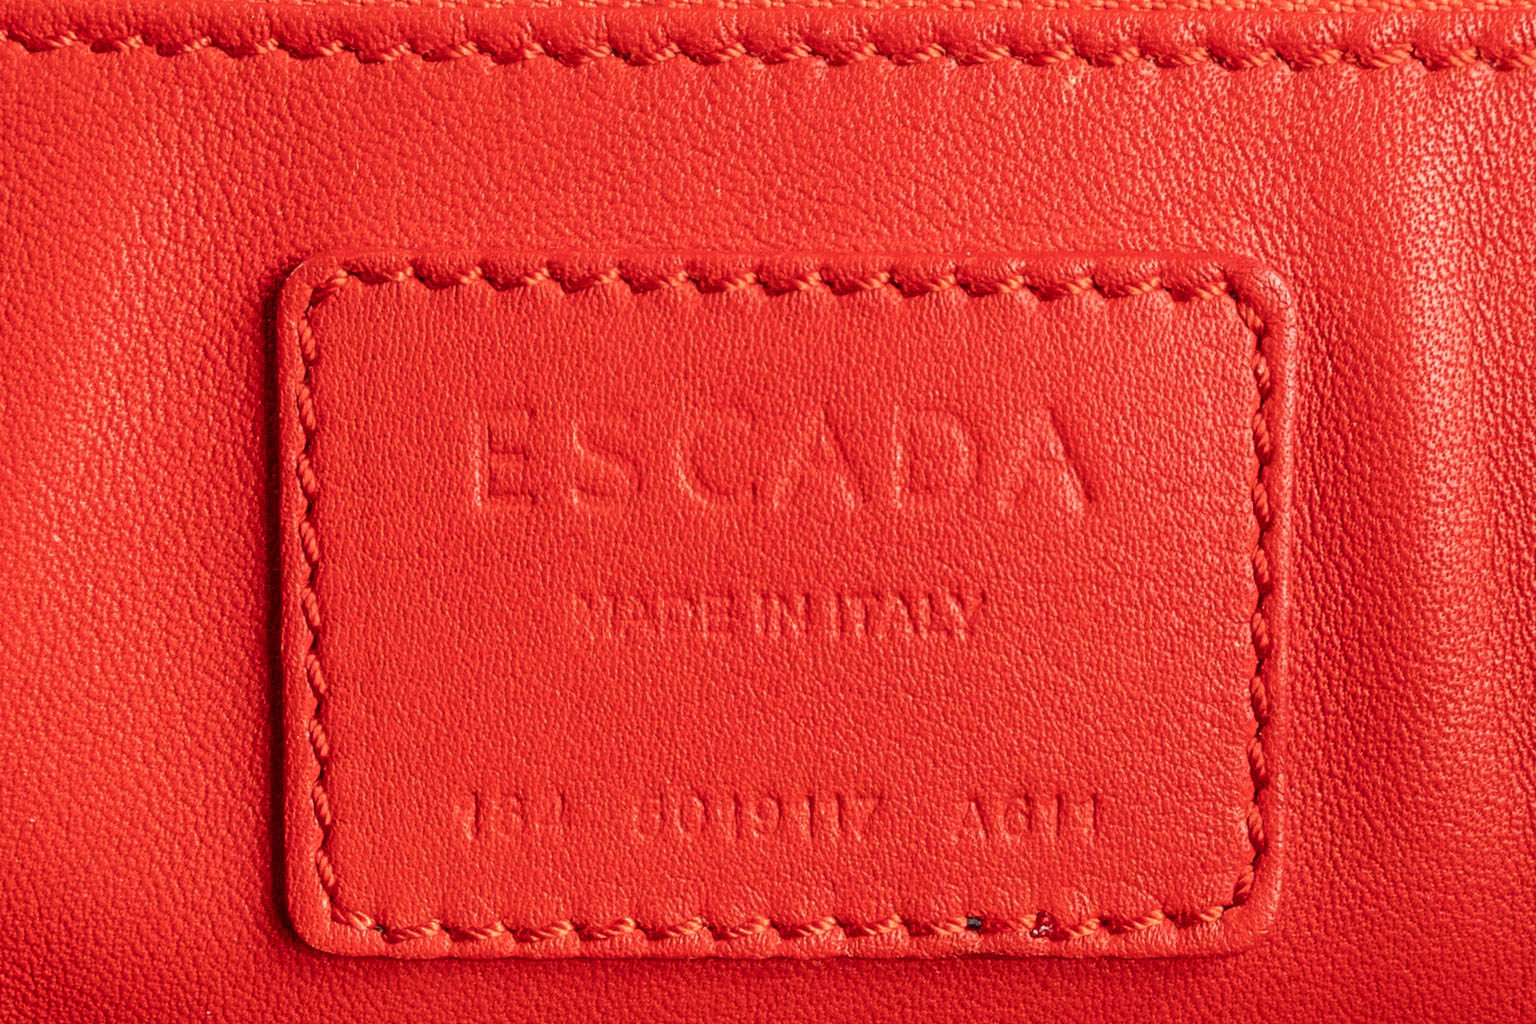 Escada, a handbag made of red leather. (W:33 x H:28 cm)